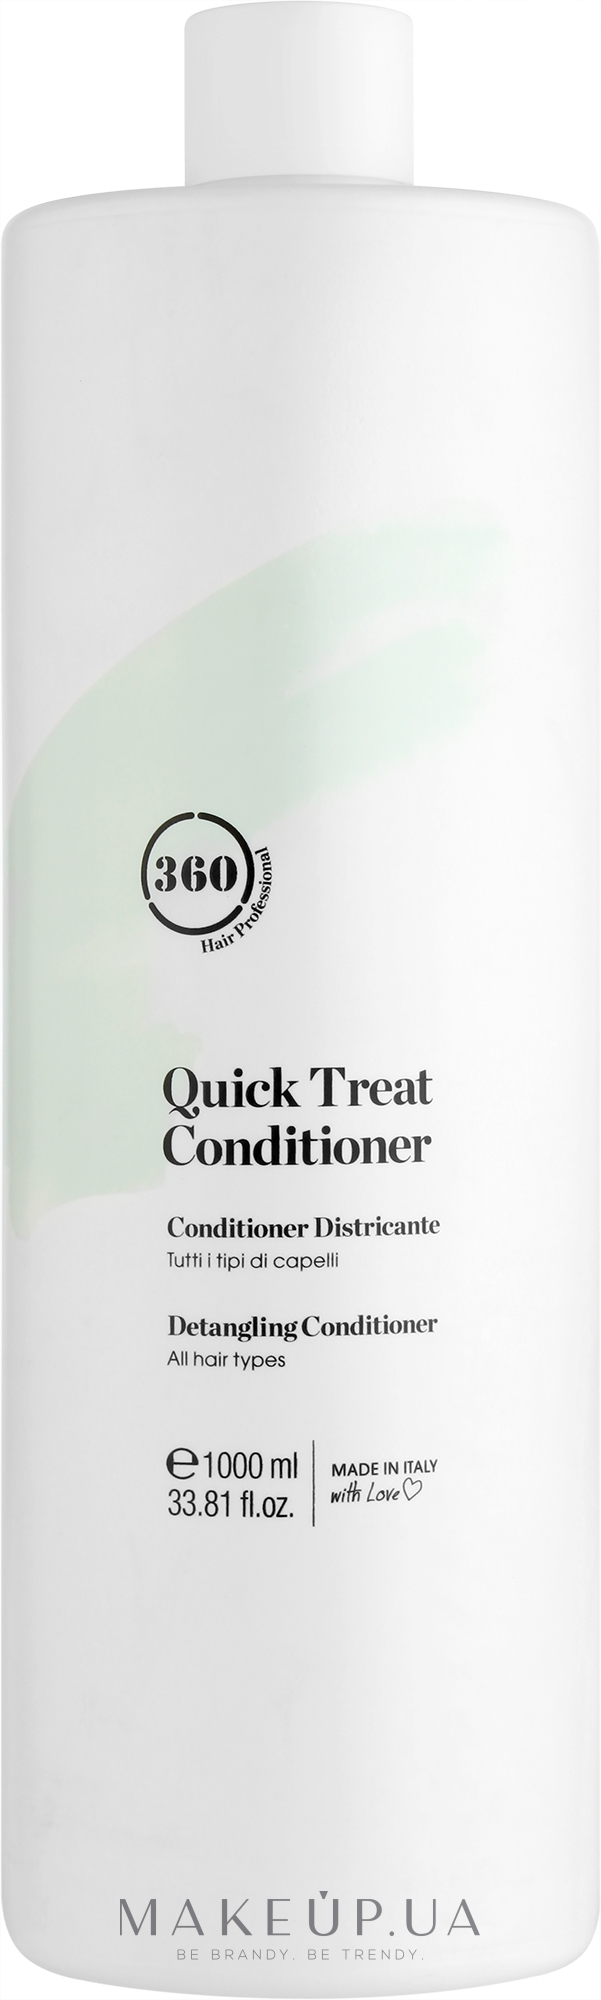 Кондиционер мгновенного действия для распутывания всех типов волос - 360 Be Quick Treat Conditioner — фото 1000ml